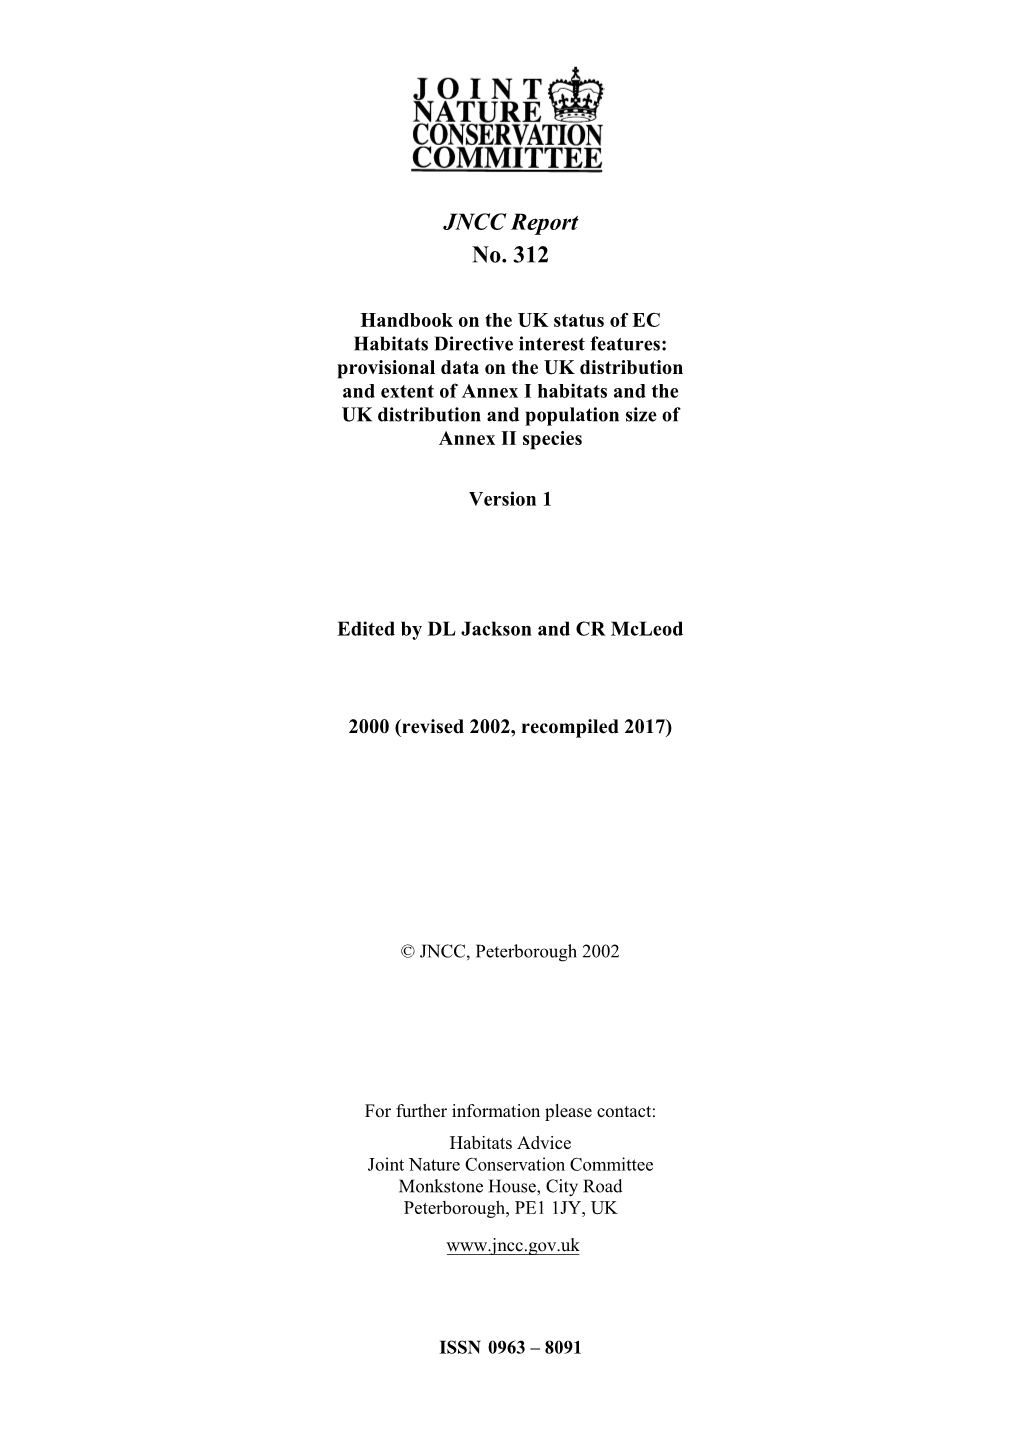 Handbook on UK Status of EC Habitats Directive Interest Features